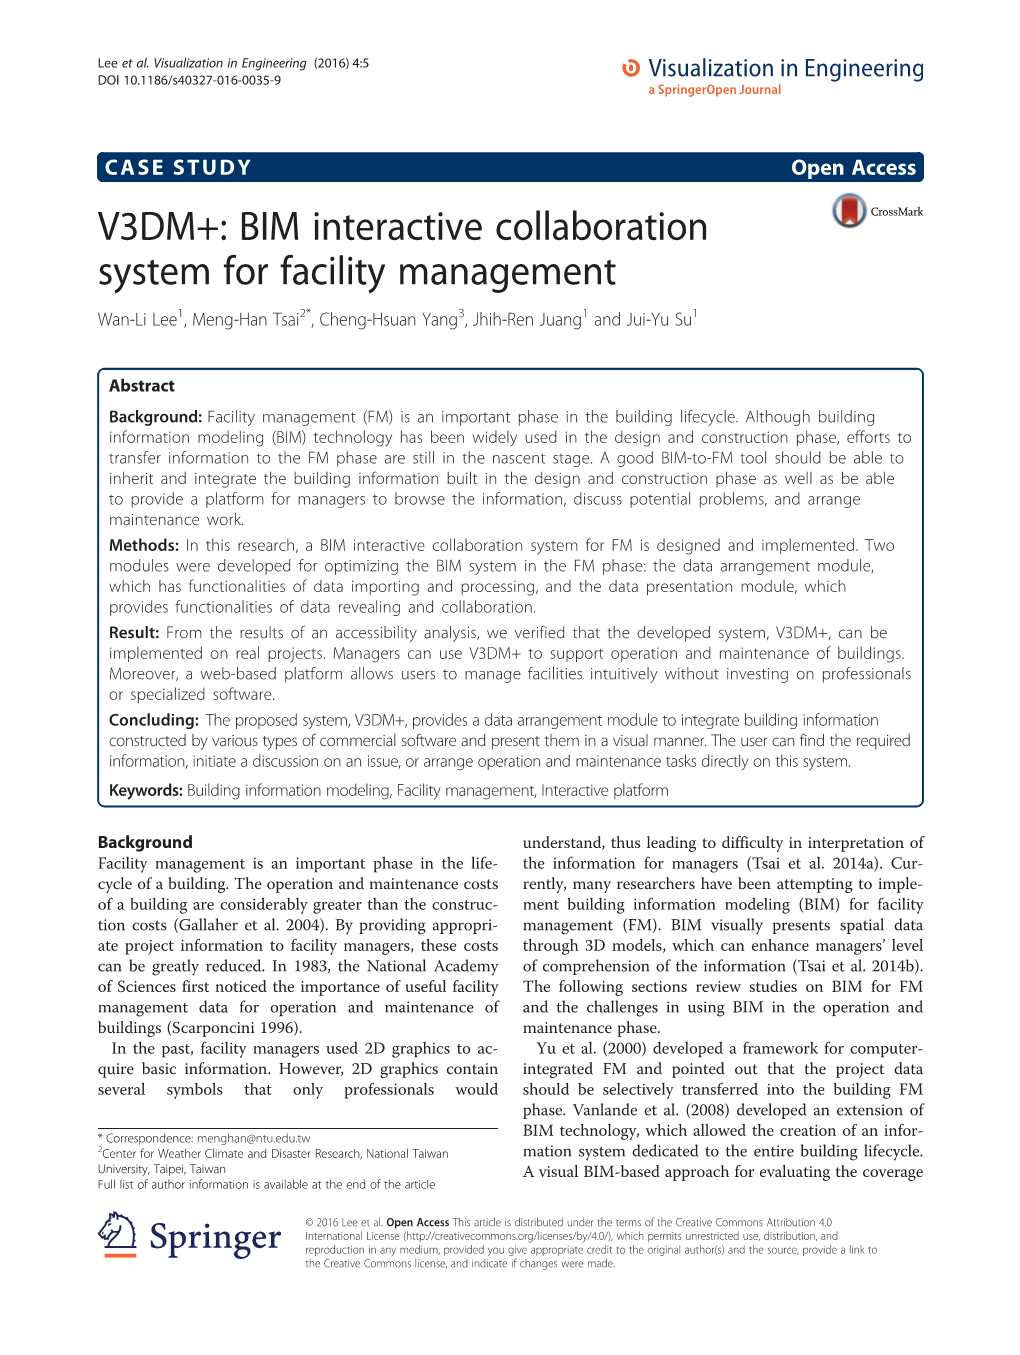 V3DM+: BIM Interactive Collaboration System for Facility Management Wan-Li Lee1, Meng-Han Tsai2*, Cheng-Hsuan Yang3, Jhih-Ren Juang1 and Jui-Yu Su1